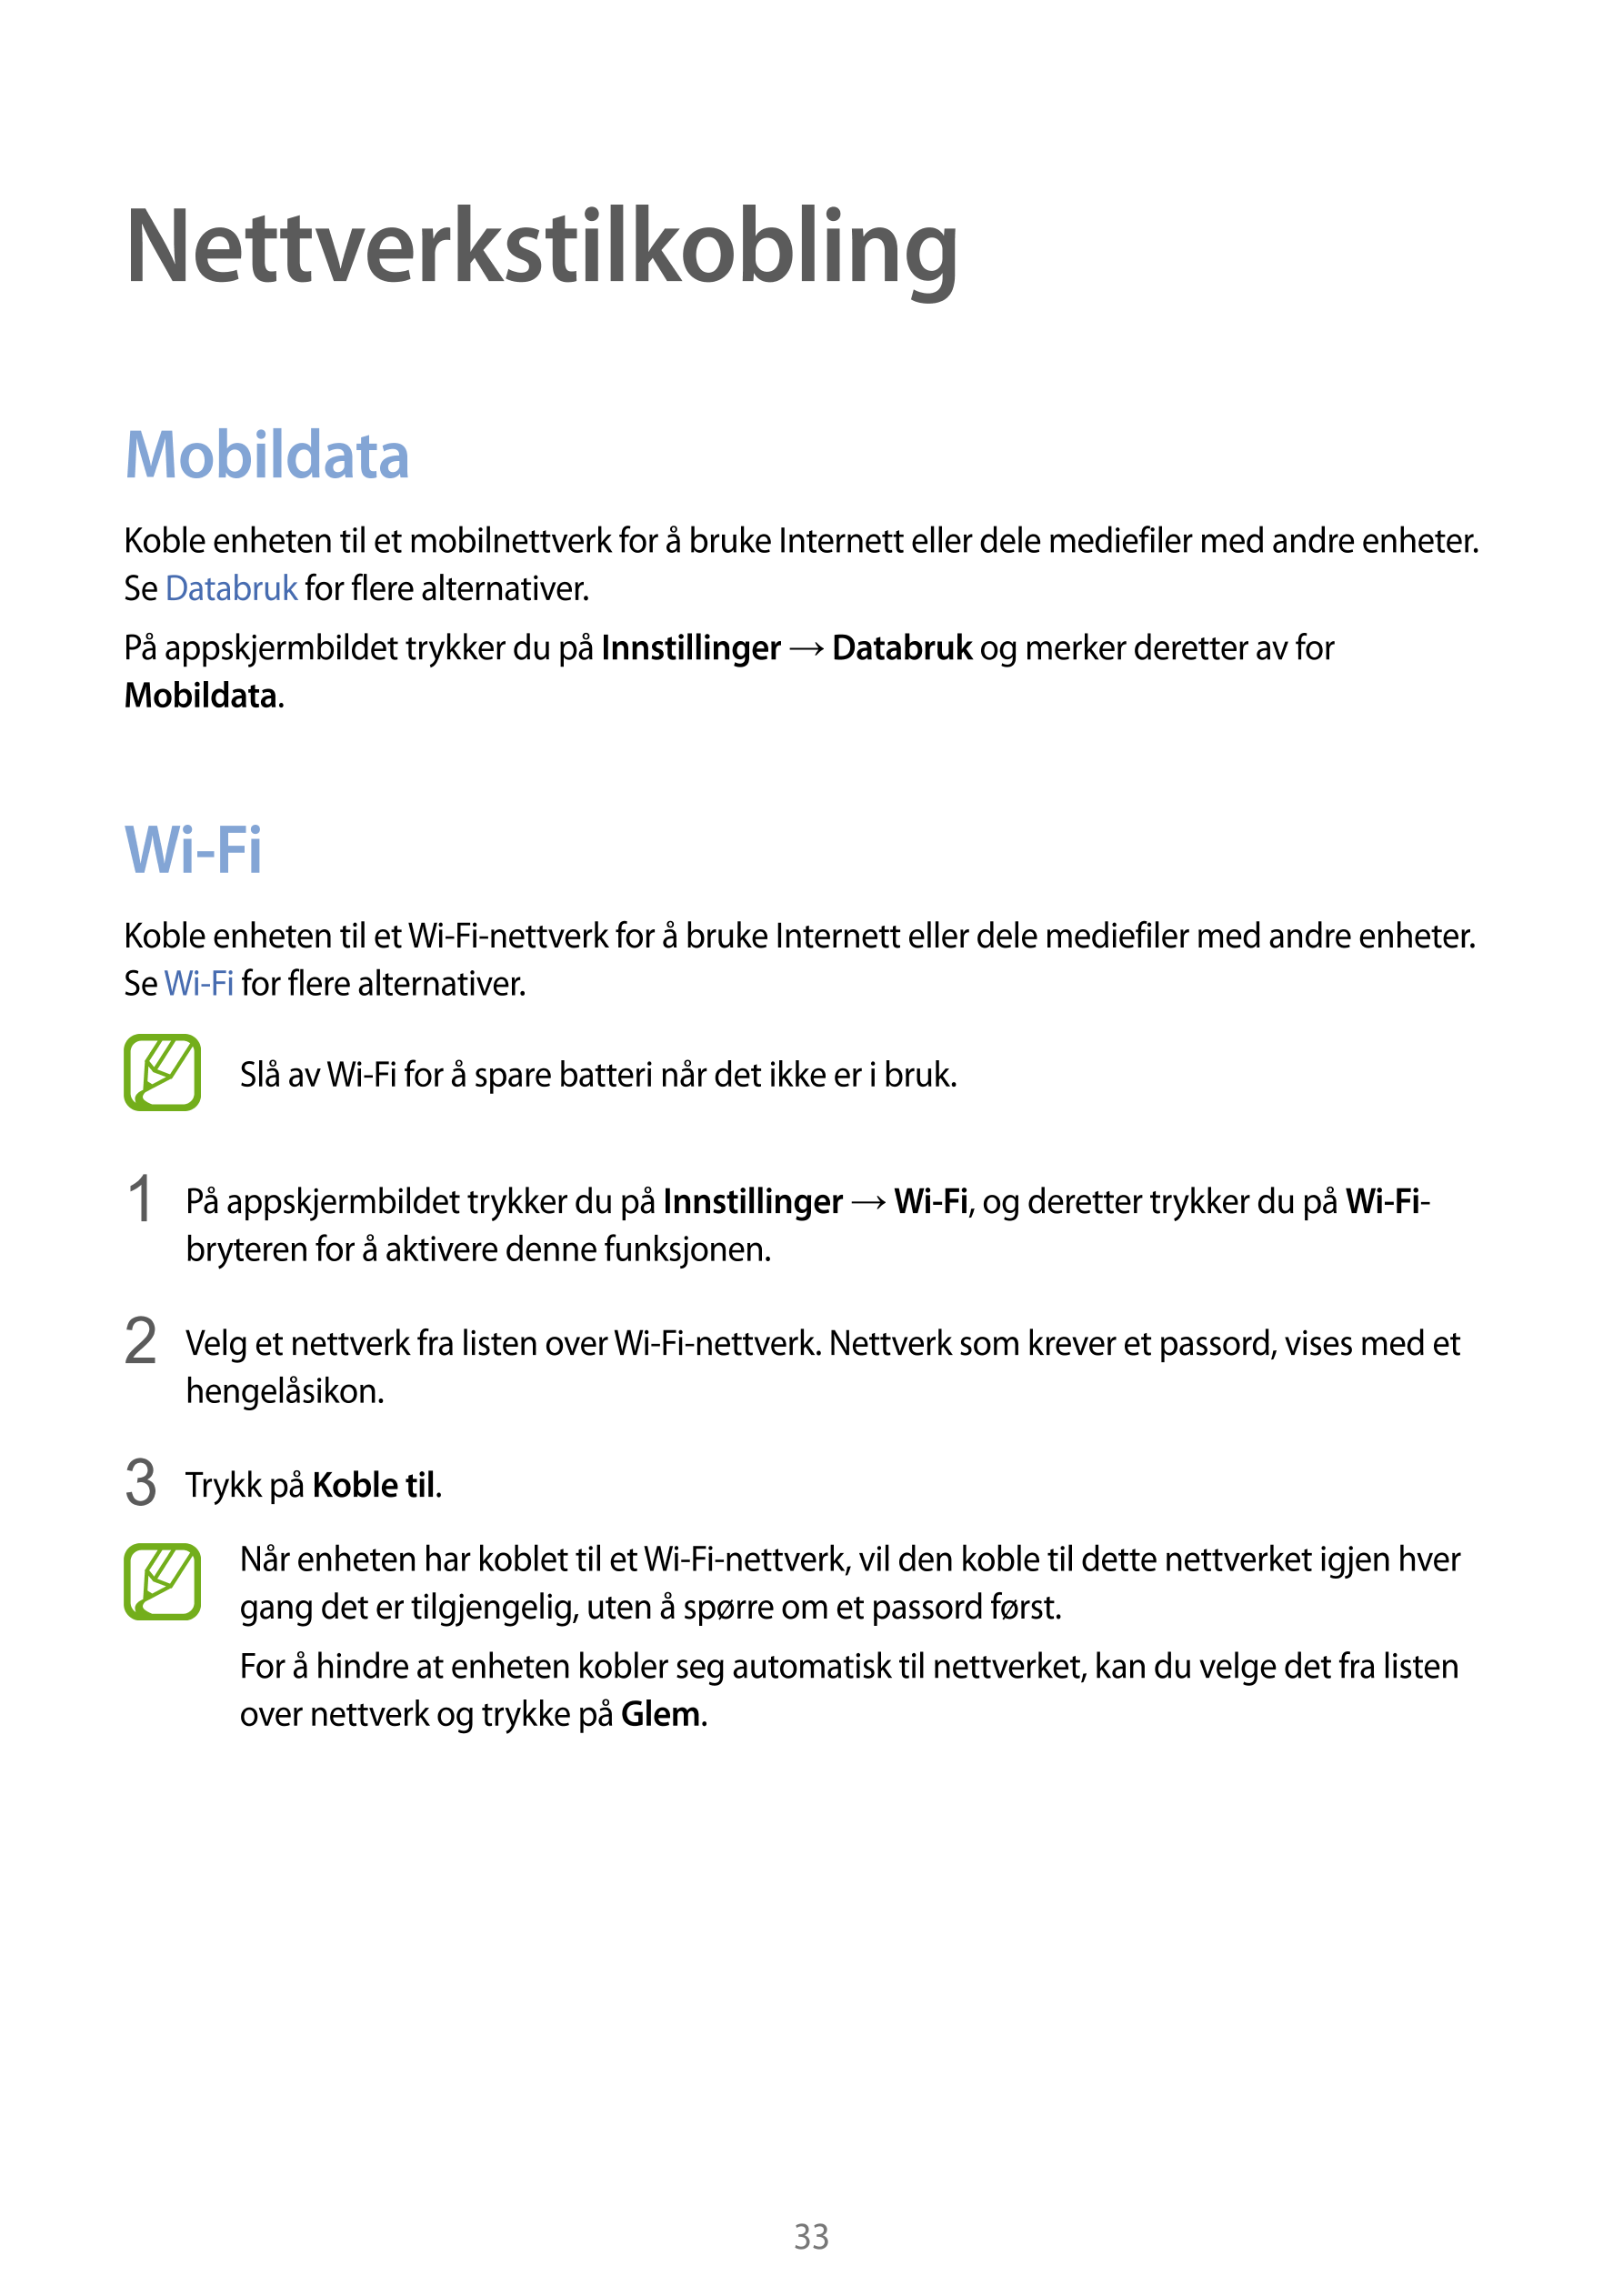 Nettverkstilkobling
Mobildata
Koble enheten til et mobilnettverk for å bruke Internett eller dele mediefiler med andre enheter. 